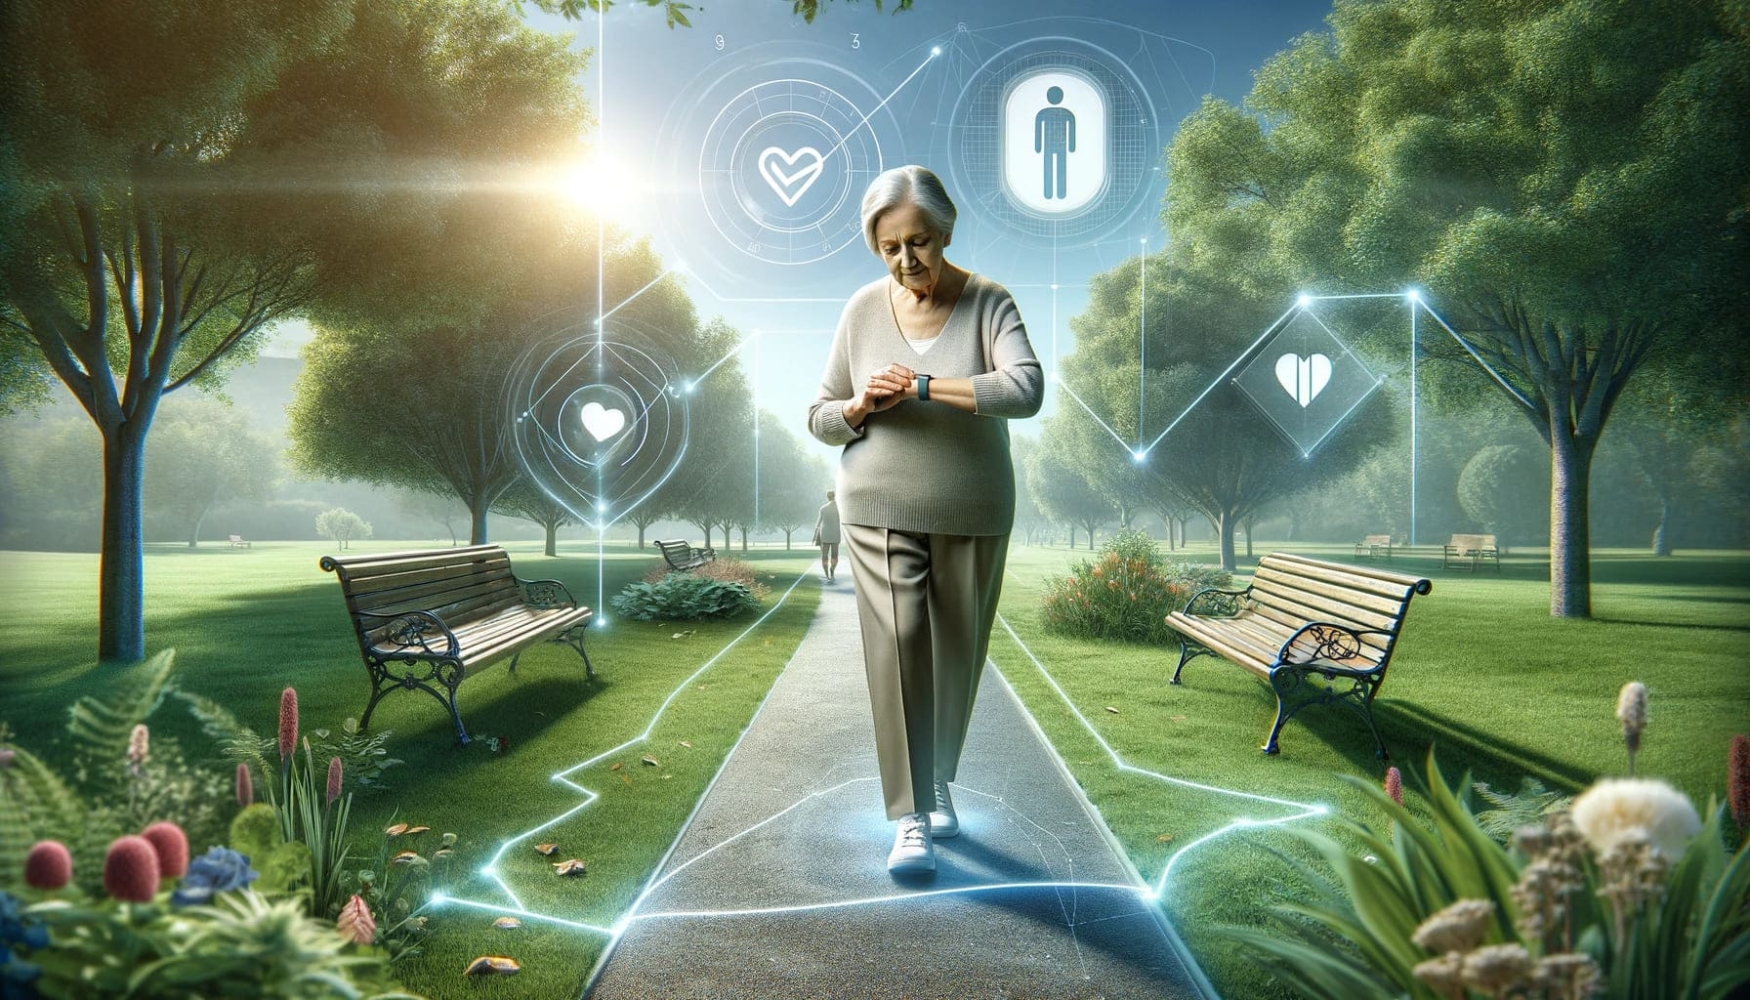 Eine ältere Frau spaziert durch einen Park und trägt einen GPS-Tracker am Handgelenk. Um sie herum schweben digitale Symbole, die das Sicherheitsnetz symbolisieren, das sie bei Demenz in Sicherheit hält